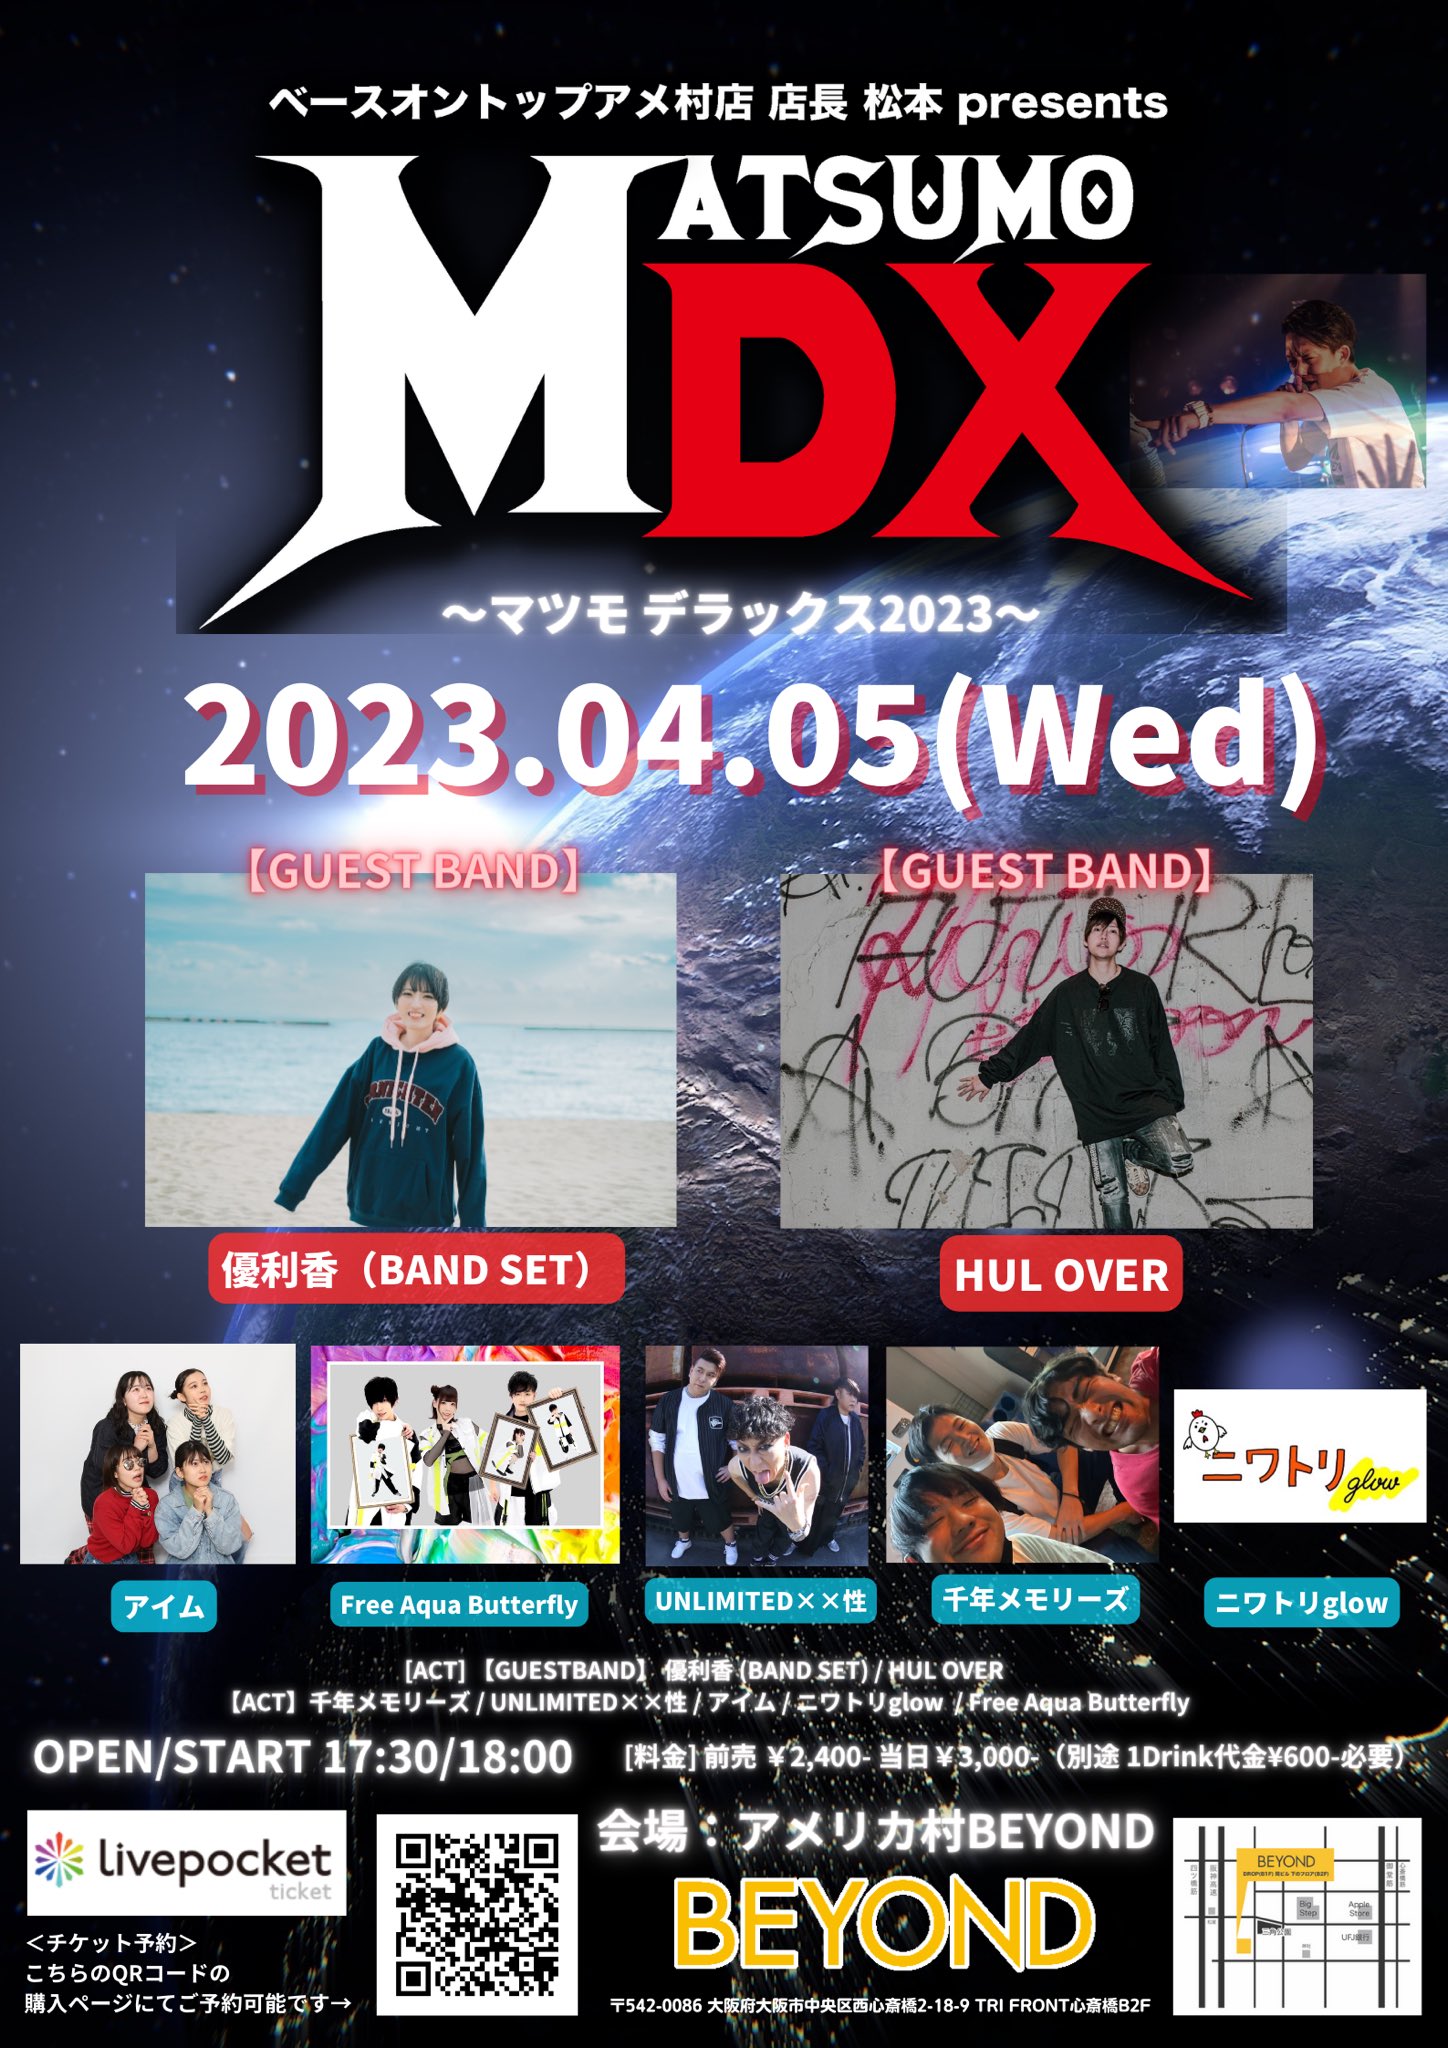 ベースオントップアメ村店presents MATSUMO DX 2023